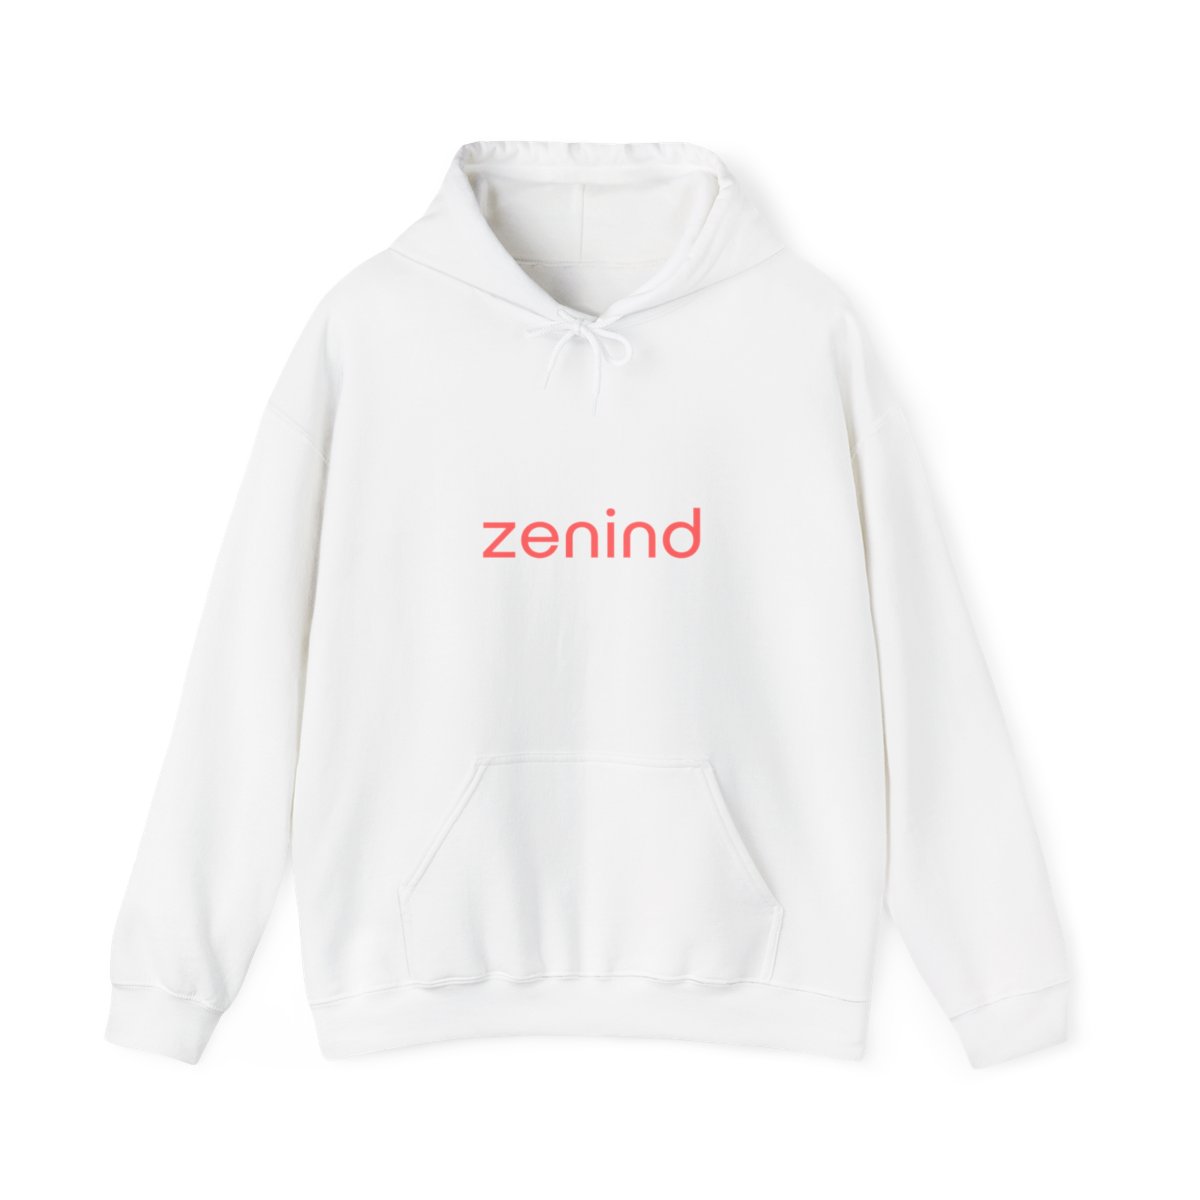 ZENIND Unisex Heavy Blend™ Hooded Sweatshirt product main image